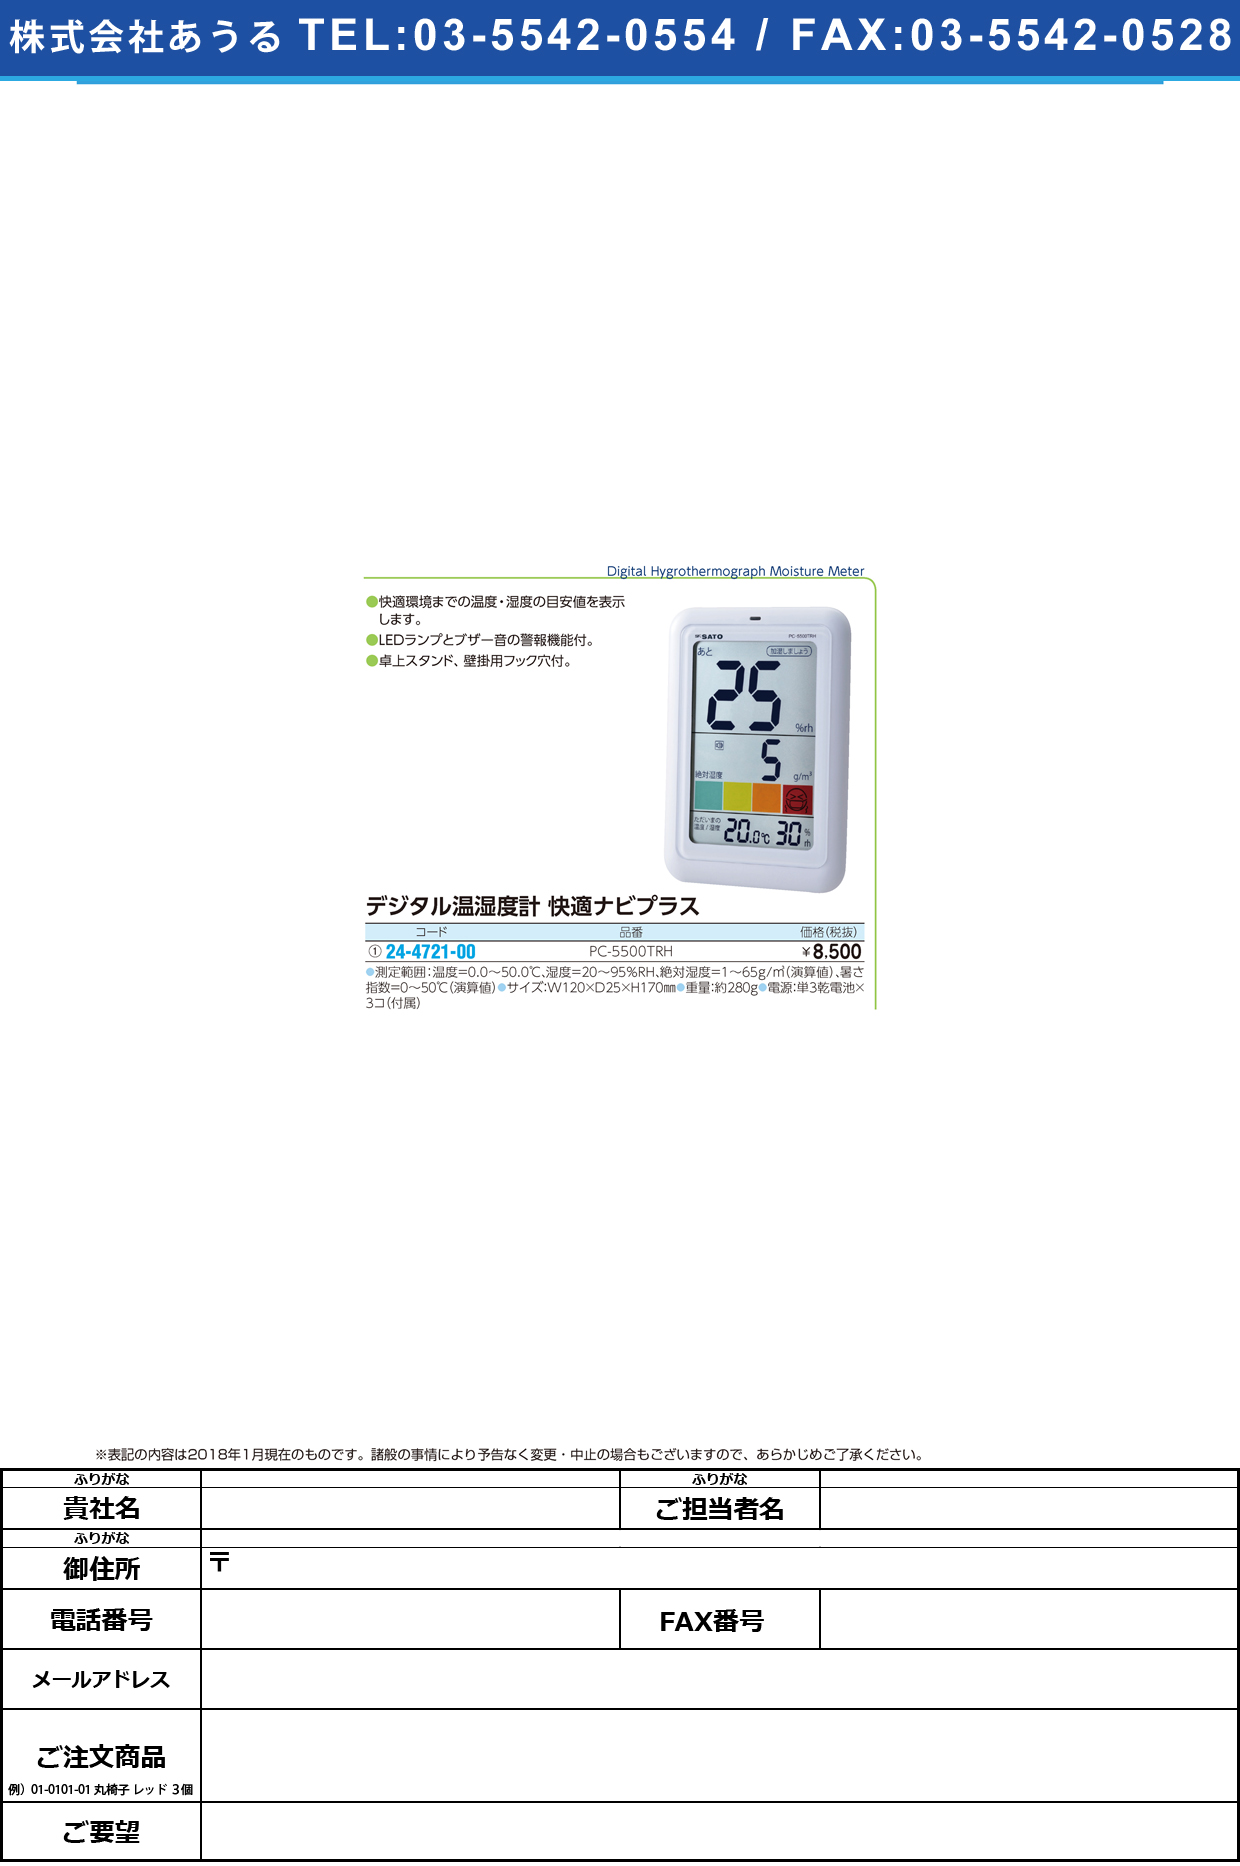 (24-4721-00)温湿度計快適ナビプラス PC-5500TRH ｵﾝｼﾂﾄﾞｹｲｶｲﾃｷﾅﾋﾞﾌﾟﾗｽ【1個単位】【2018年カタログ商品】